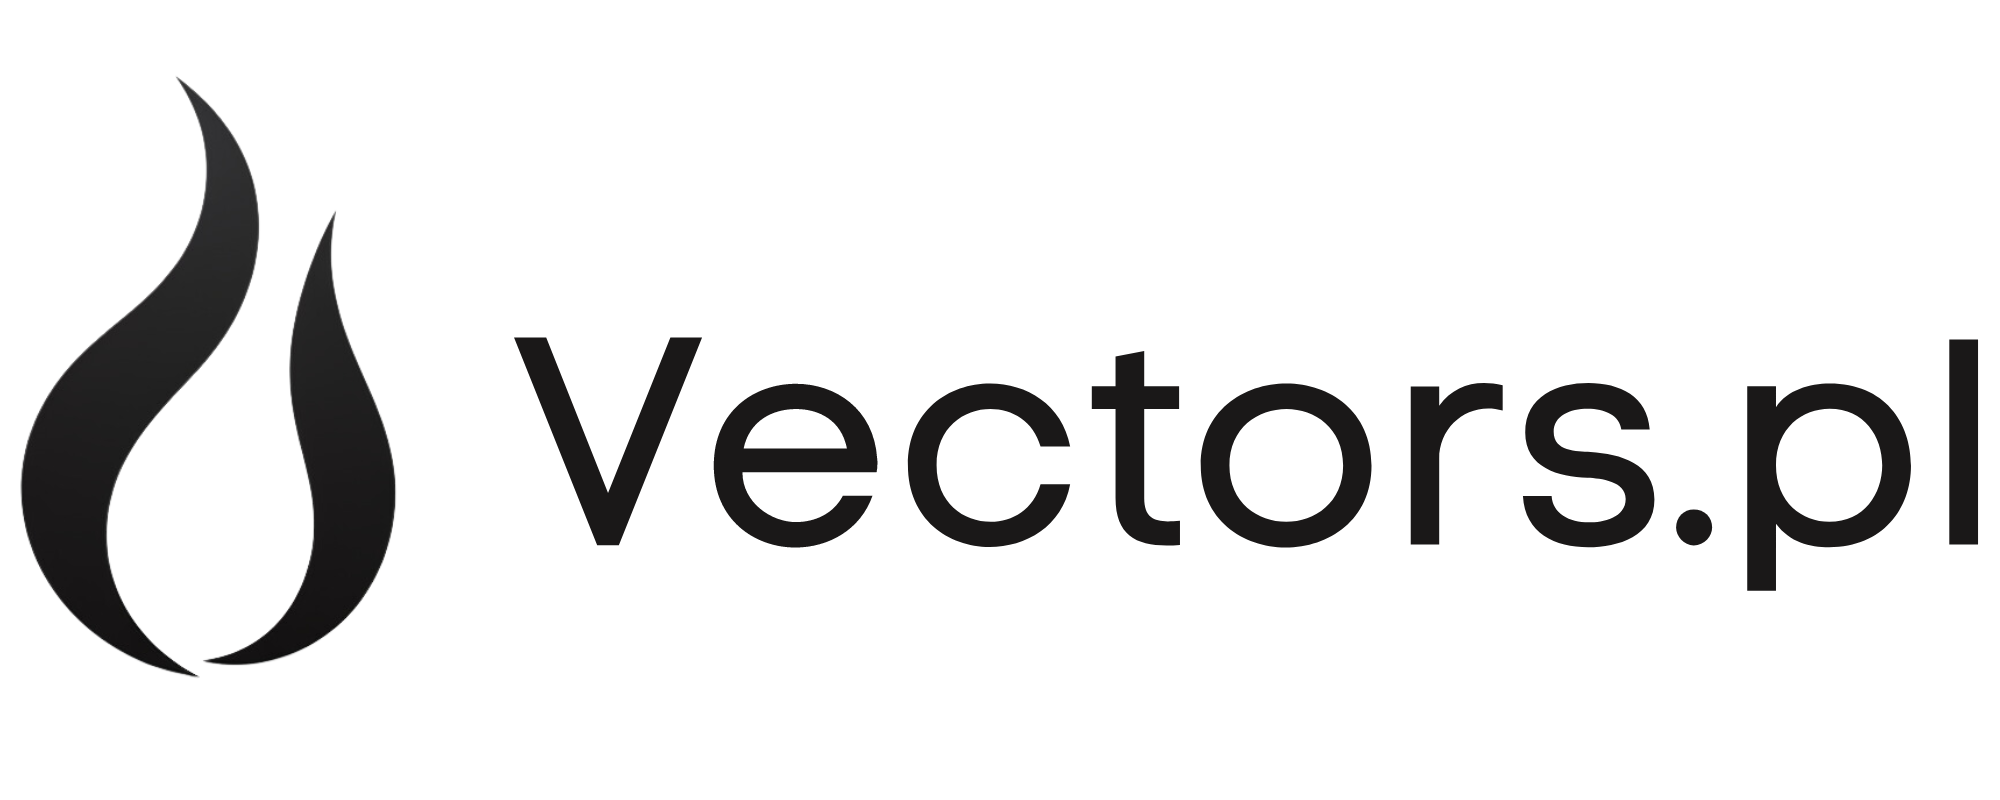 Vectors Text Logo